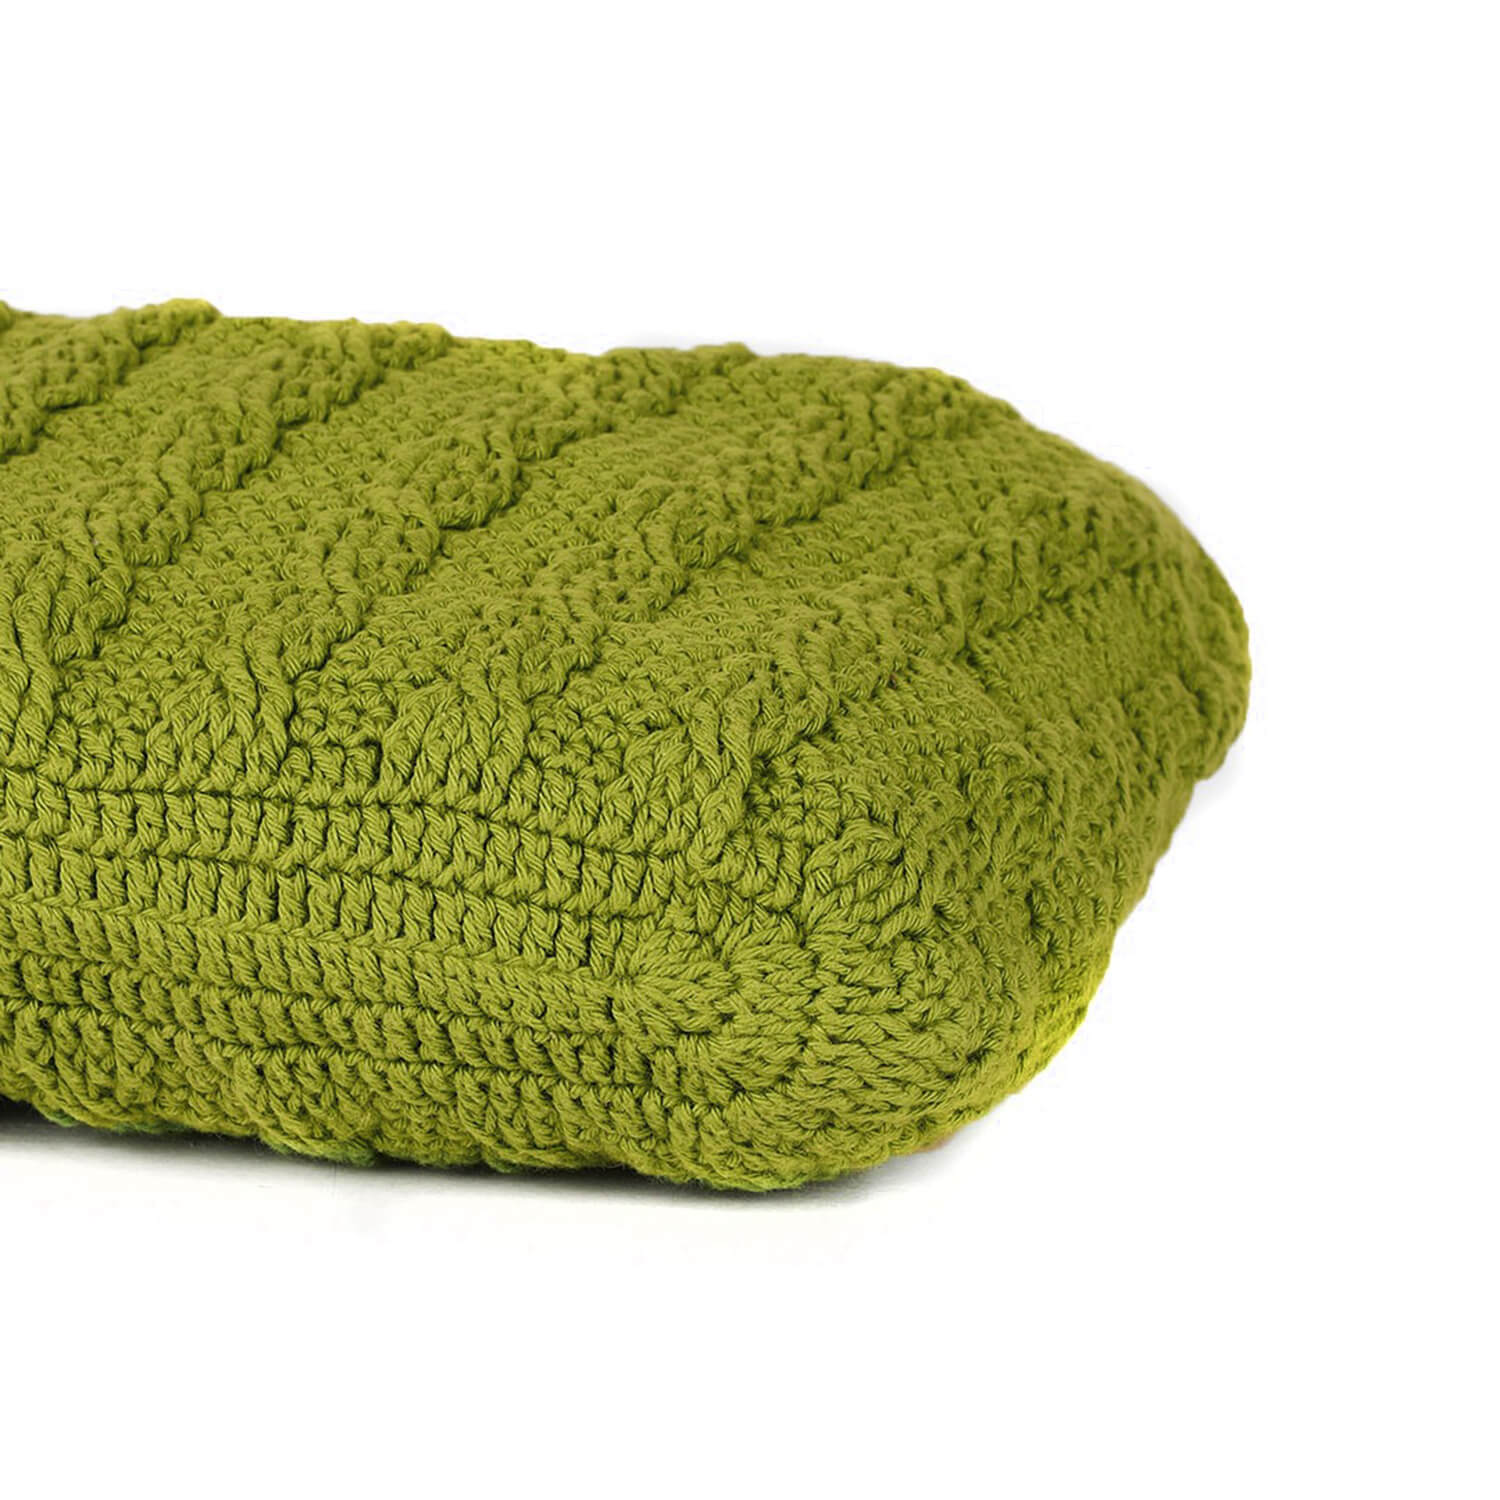 Handmade Crochet Market Bag - Olive Green 2931